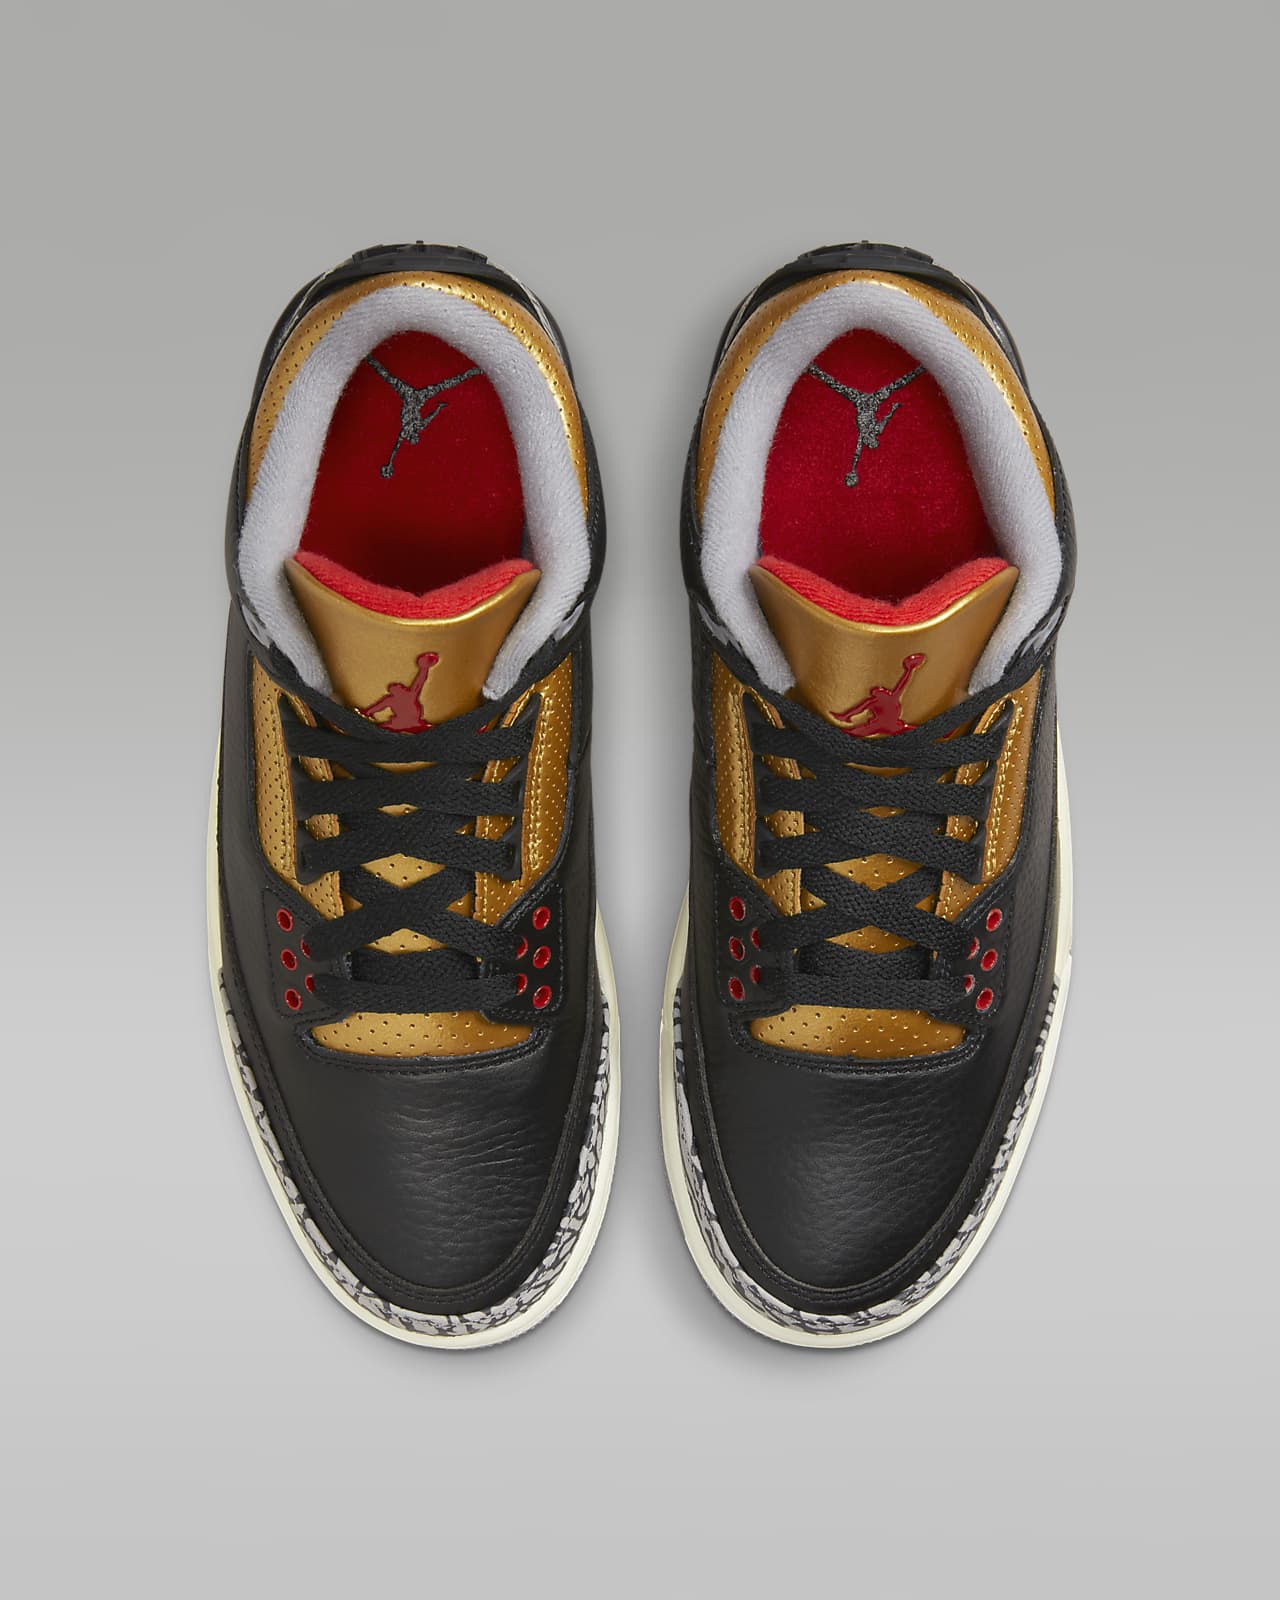 Air Jordan 3 Retro Damesschoenen. Nike Nl